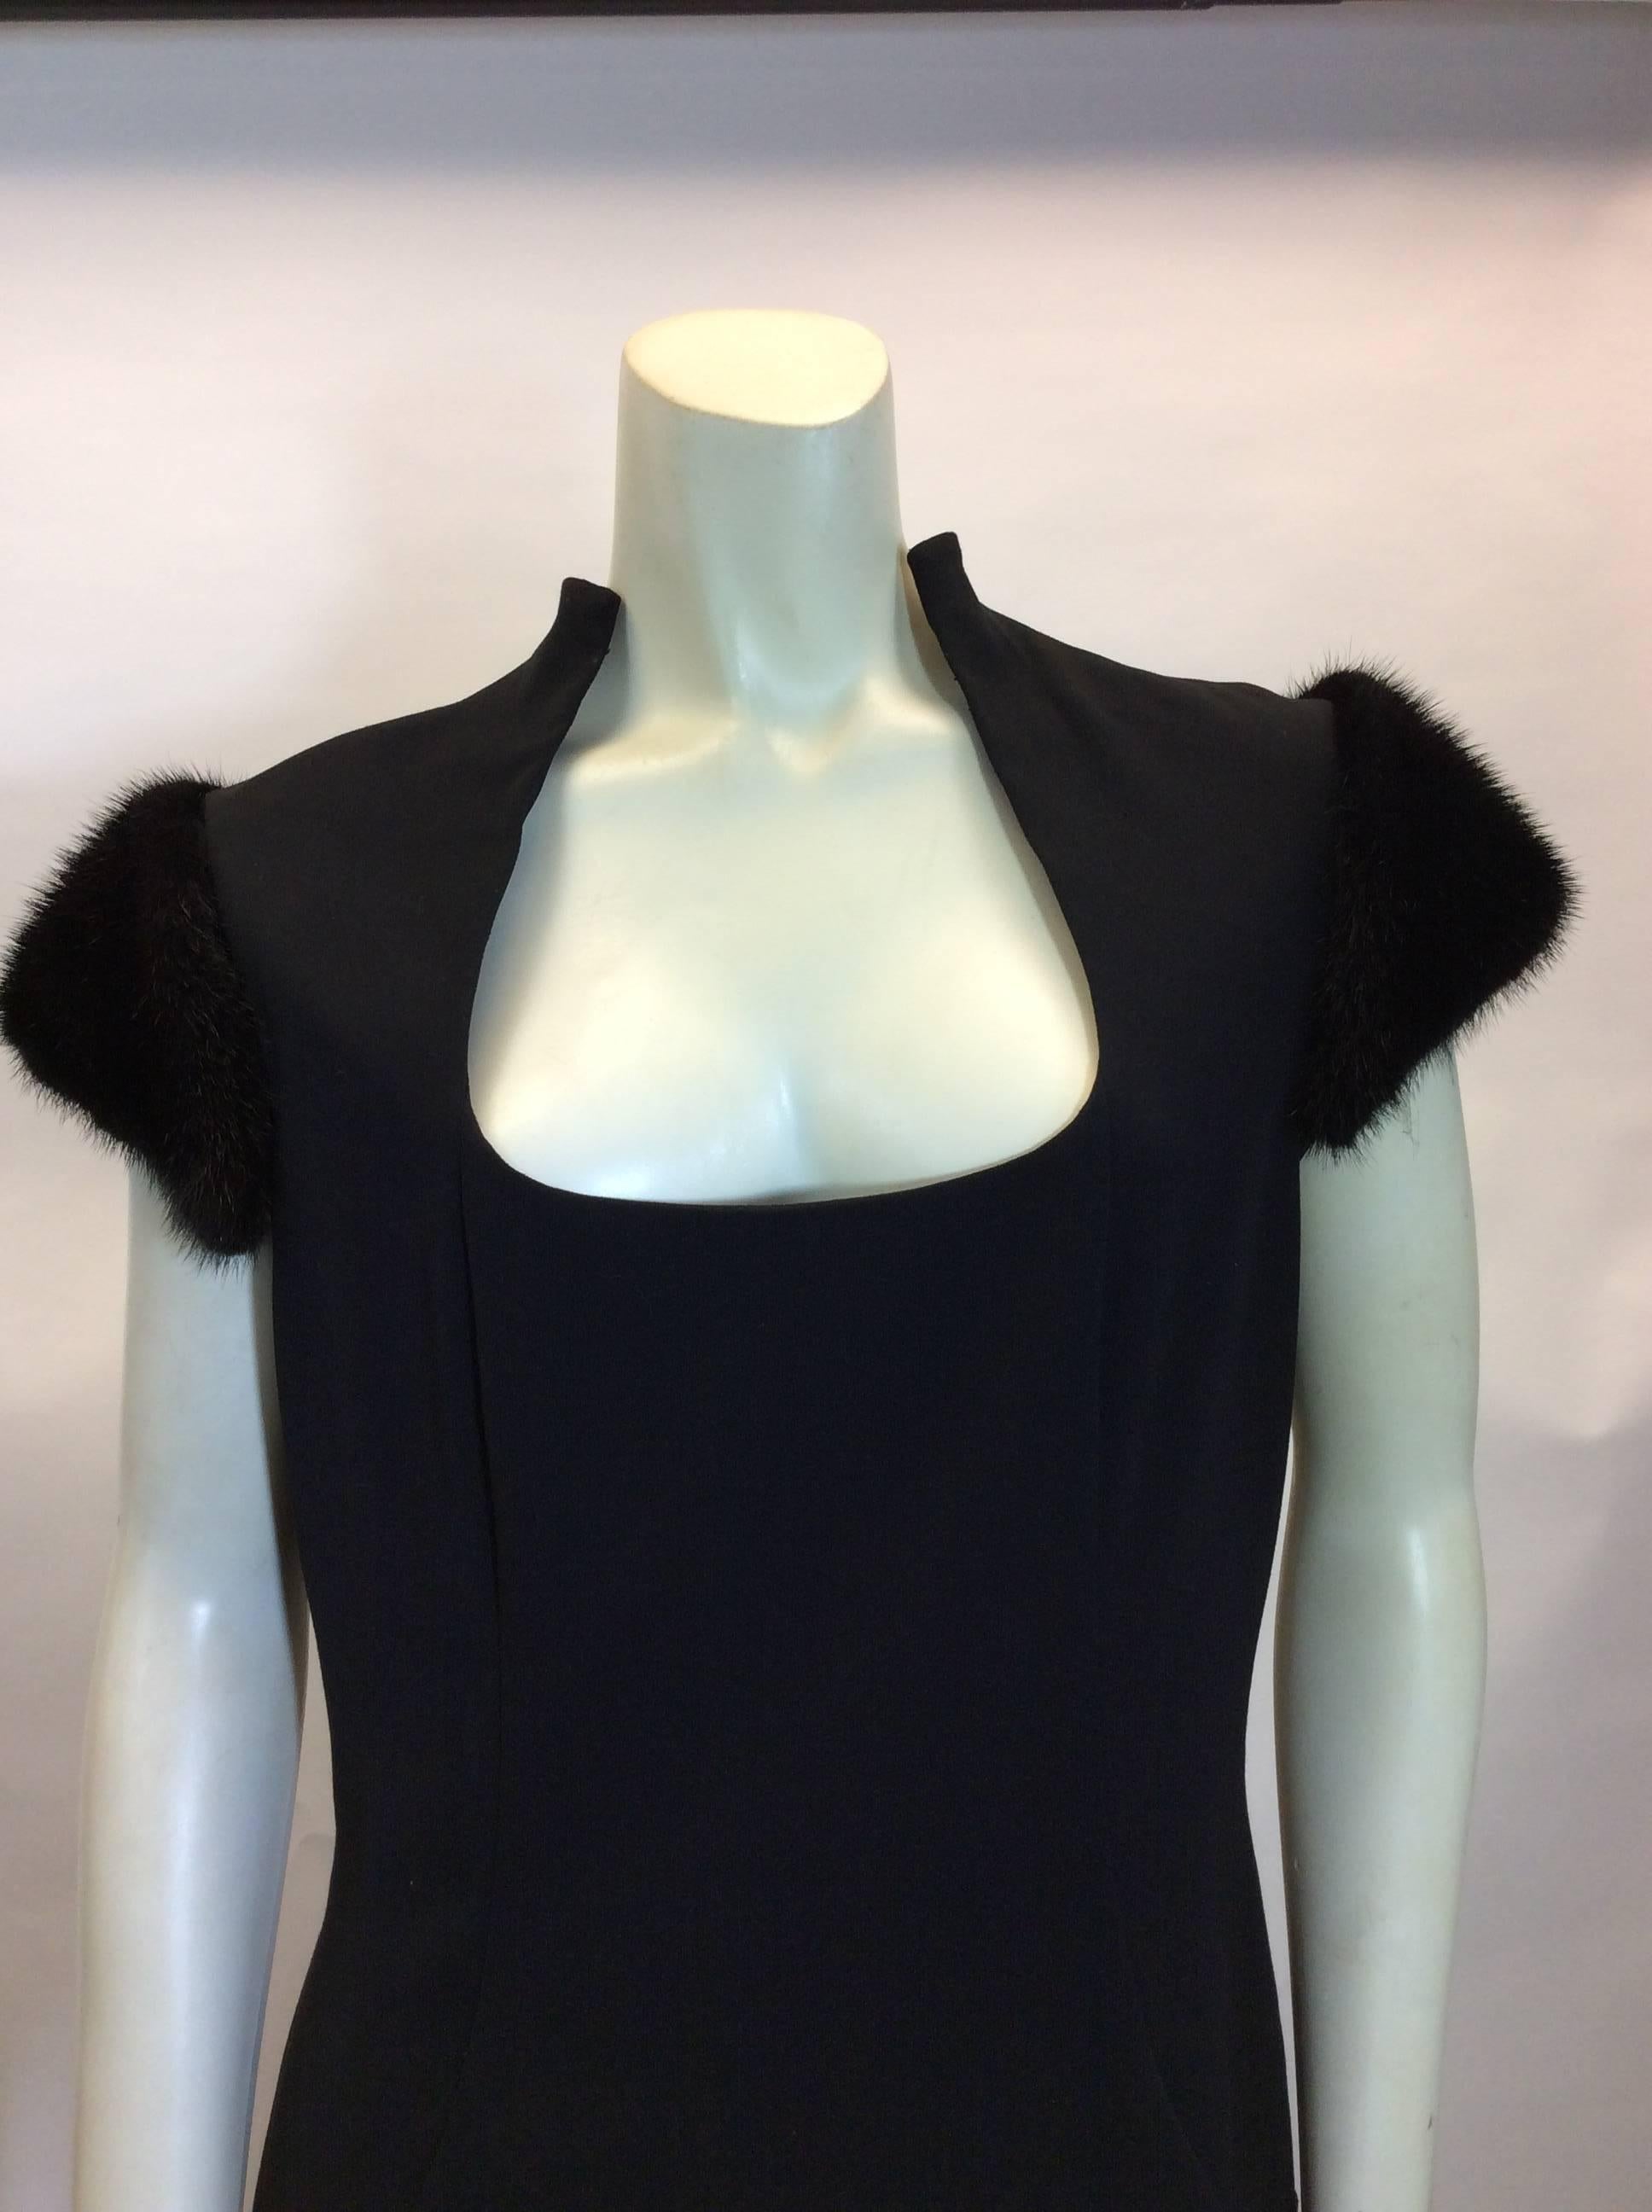 Mary Bays Mink Shoulder Black Dress
Mink trimmed sleeves
Square neckline
$299
